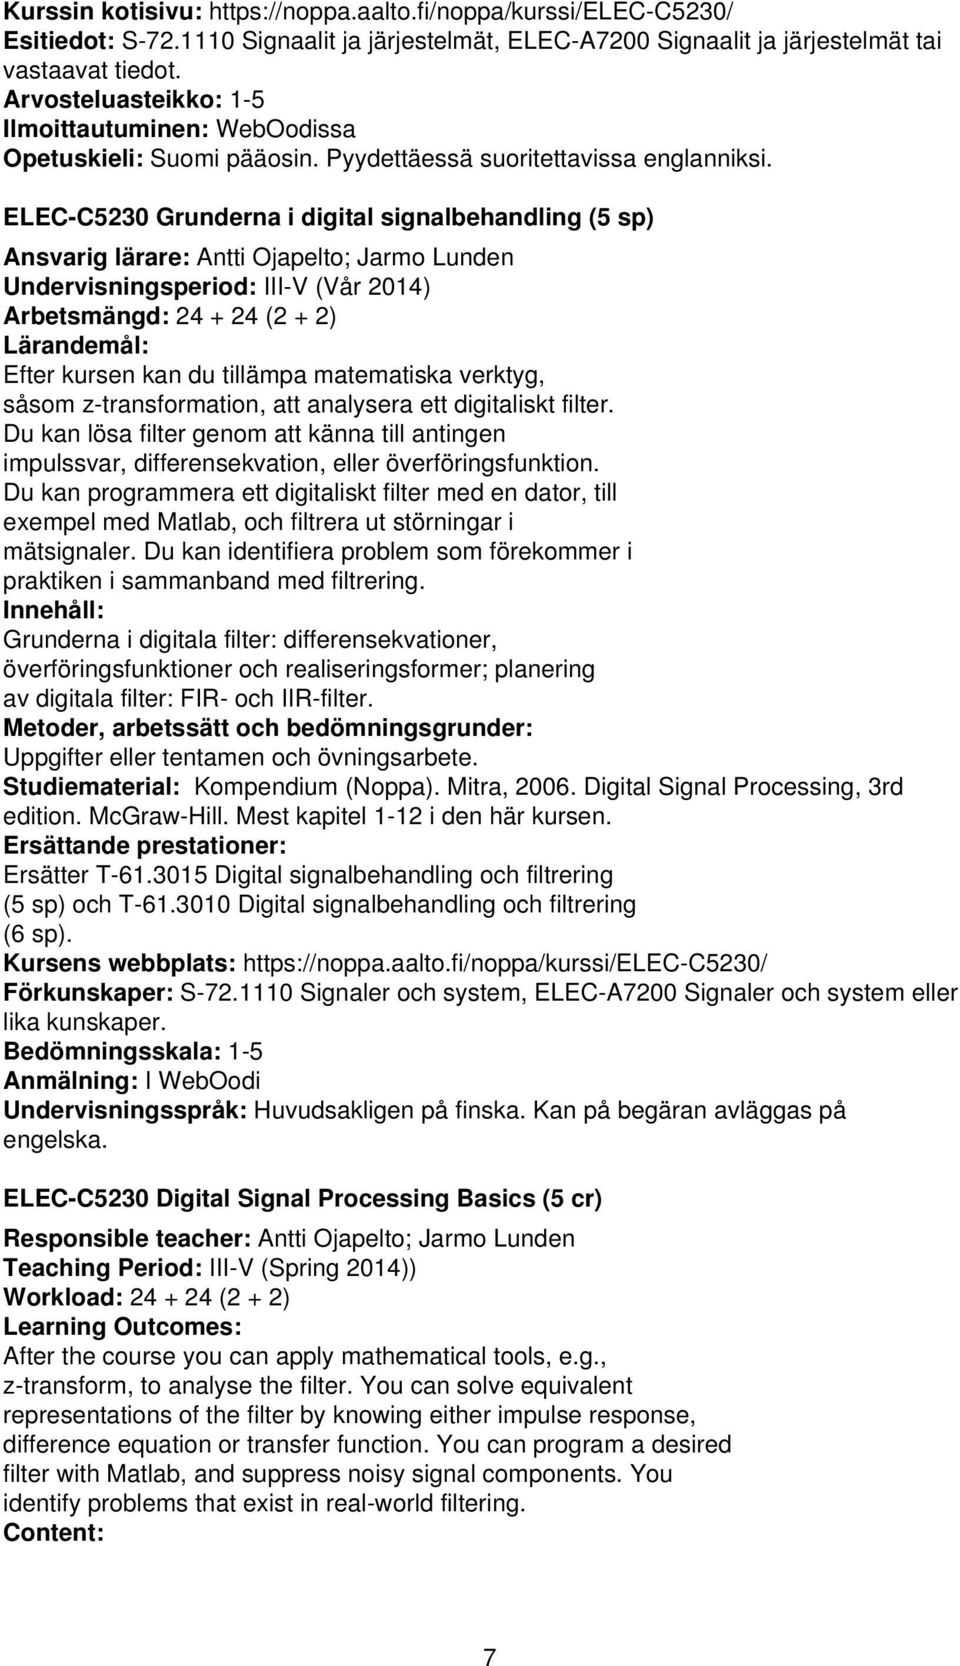 ELEC-C5230 Grunderna i digital signalbehandling (5 sp) Ansvarig lärare: Antti Ojapelto; Jarmo Lunden Undervisningsperiod: III-V (Vår 2014) Arbetsmängd: 24 + 24 (2 + 2) Lärandemål: Efter kursen kan du